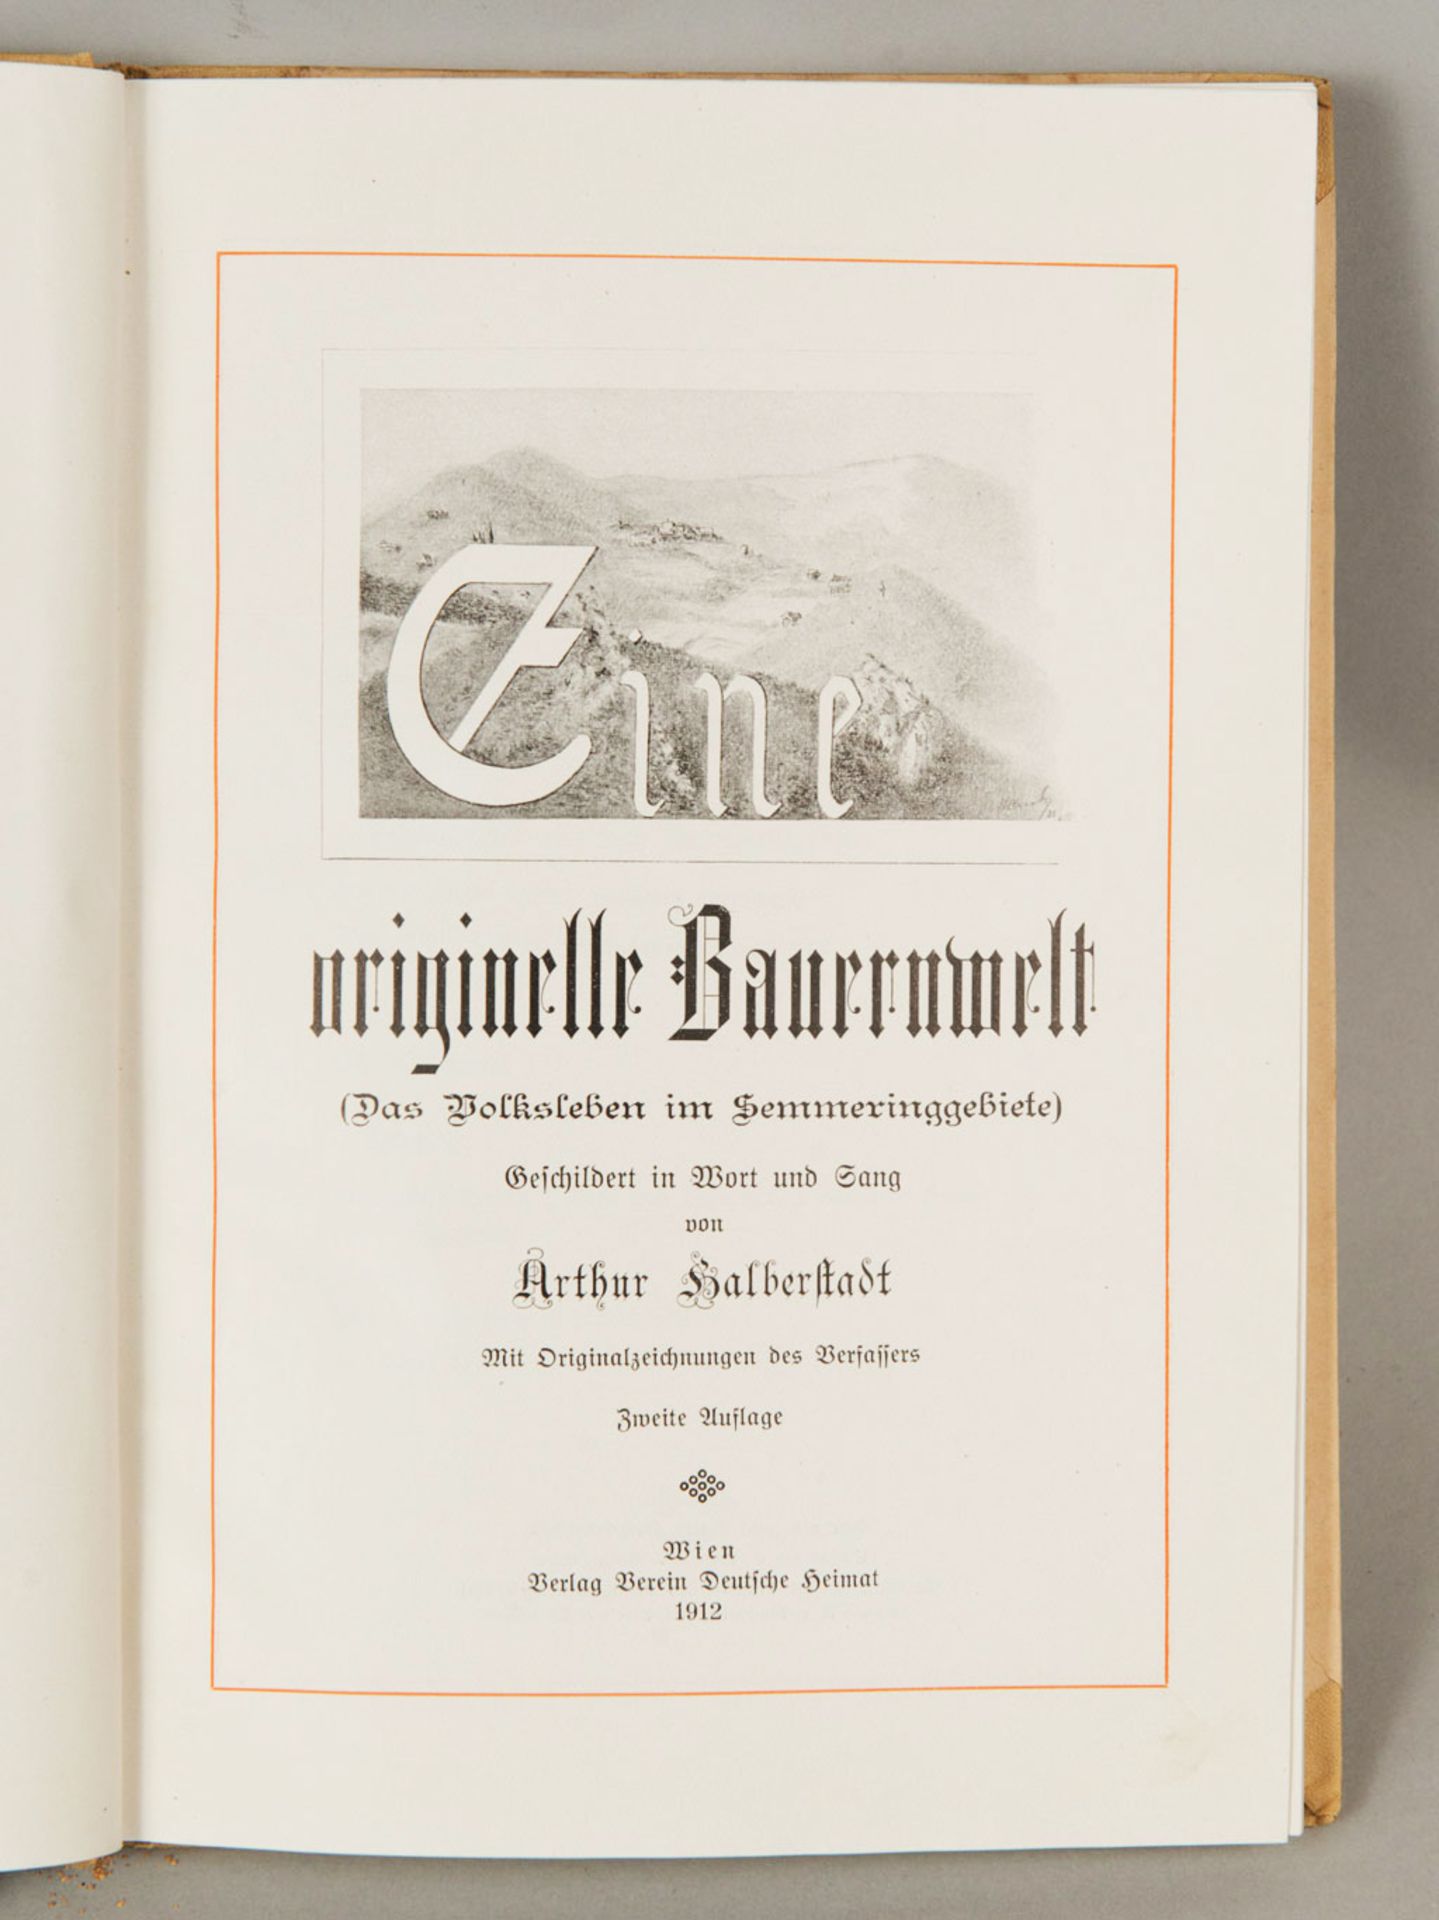 Arthur Halberstadt, Eine originelle Bauernwelt - Image 2 of 2